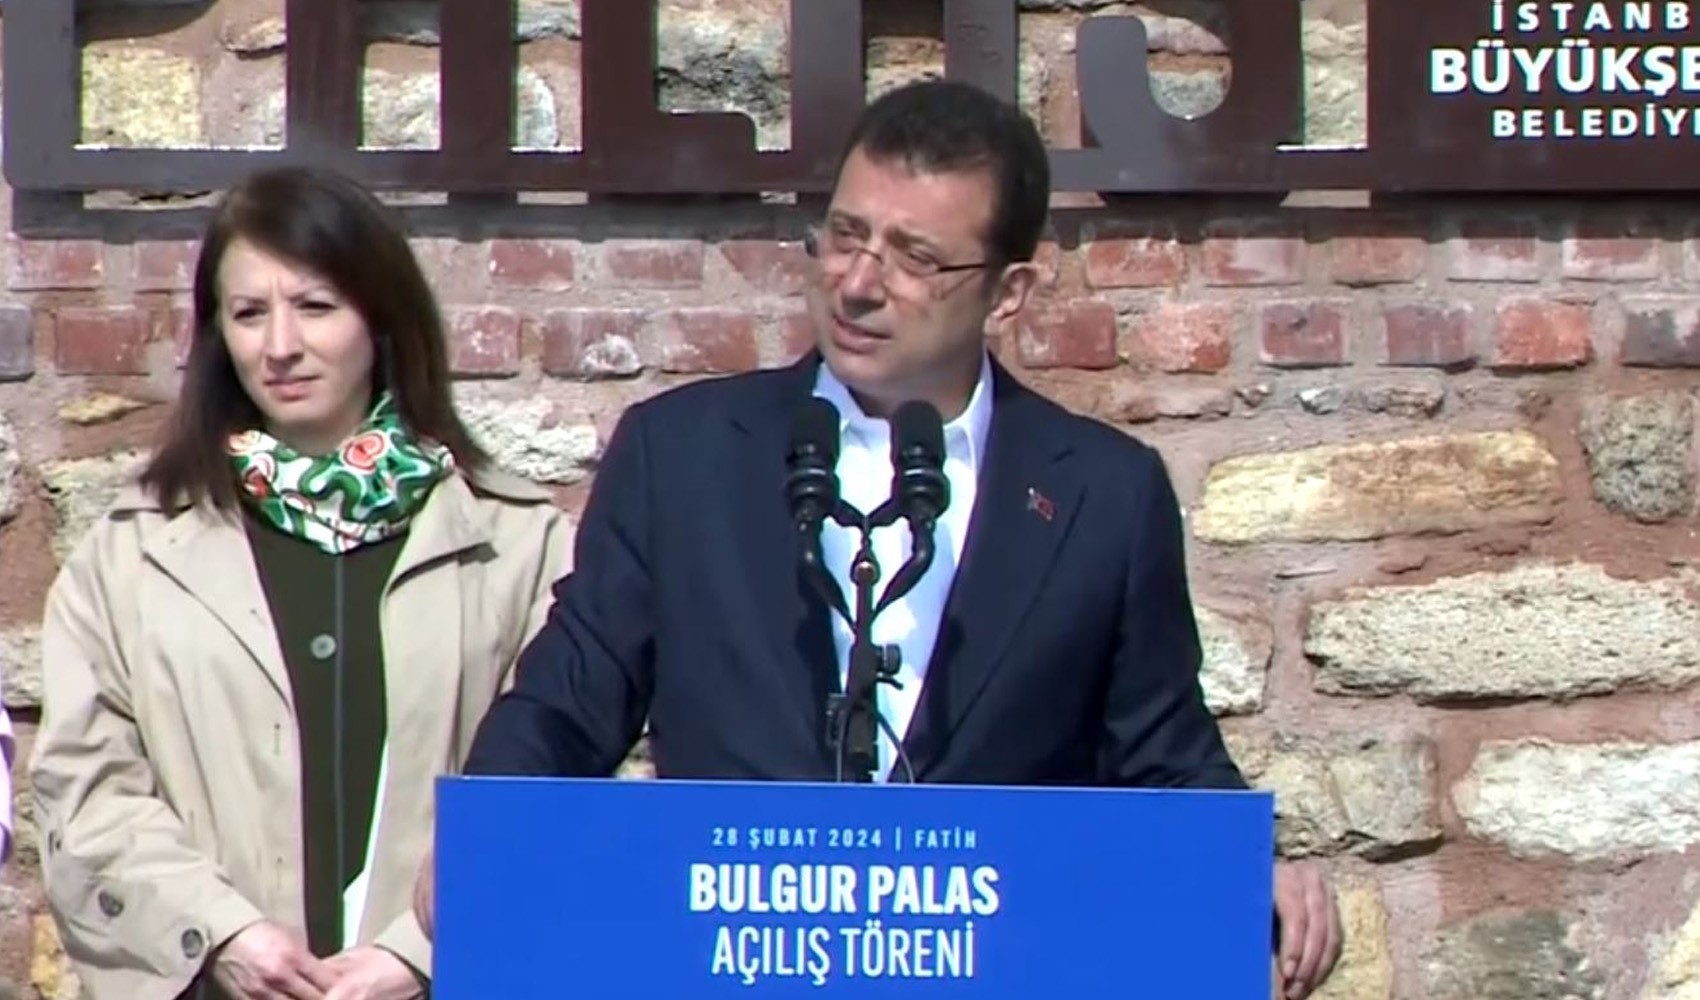 İmamoğlu Bulgur Palas açılışında konuştu: '25 yılda yapamadıklarını 5 yılda gerçekleştirdik'